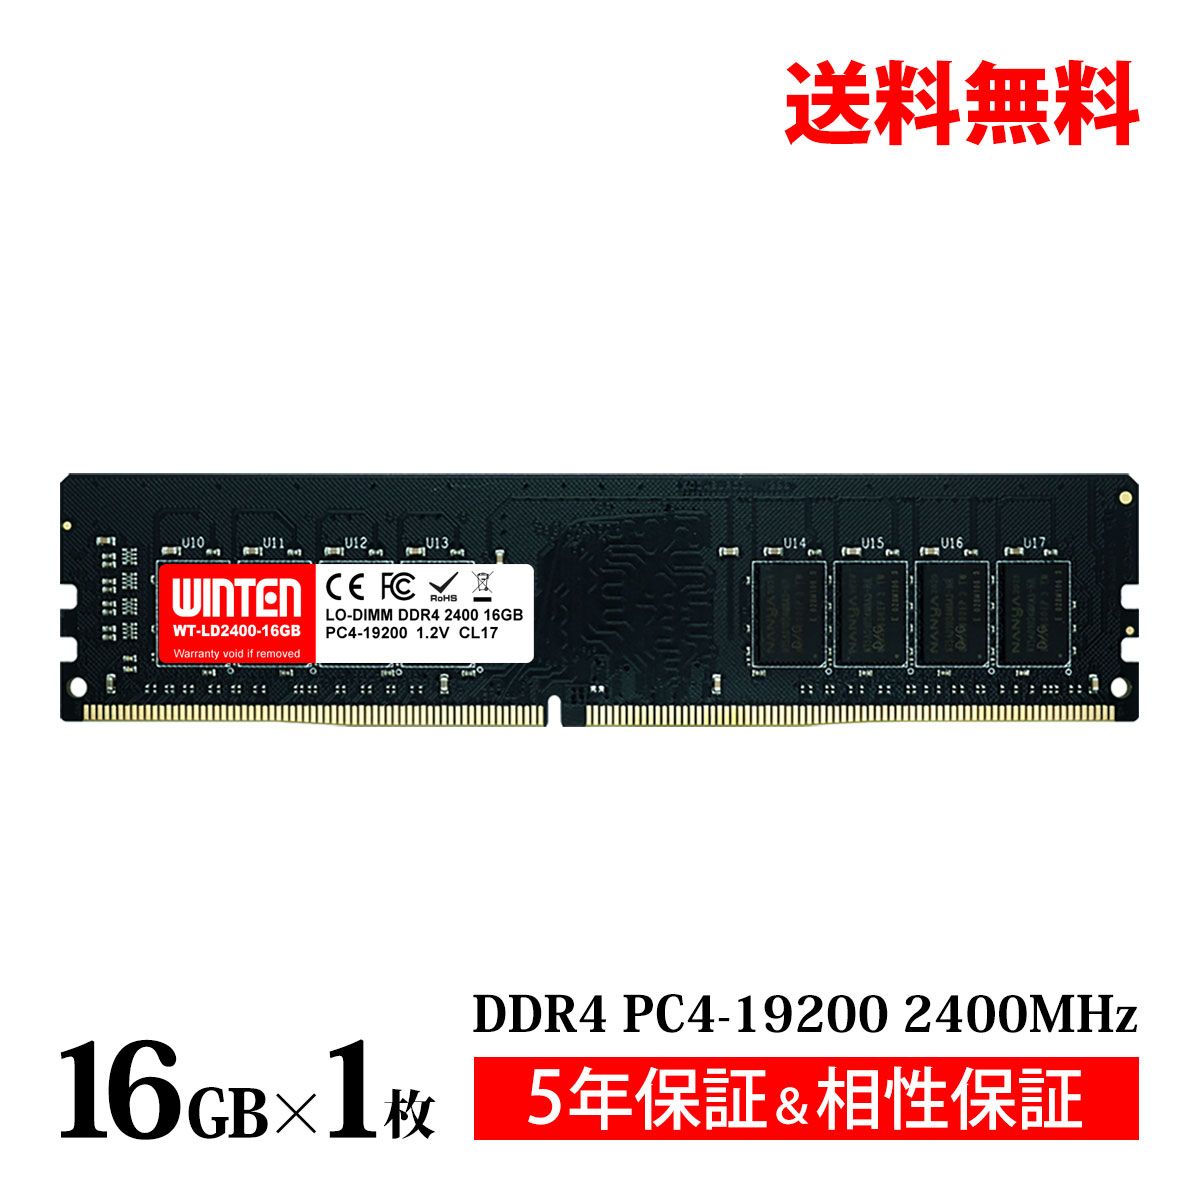 デスクトップPC用 メモリ 16GB PC4-19200(DDR4 2400) WT-LD2400-16GB【相性保証 製品5年保証 送料無料 即日出荷】DDR4 SDRAM DIMM 内蔵..